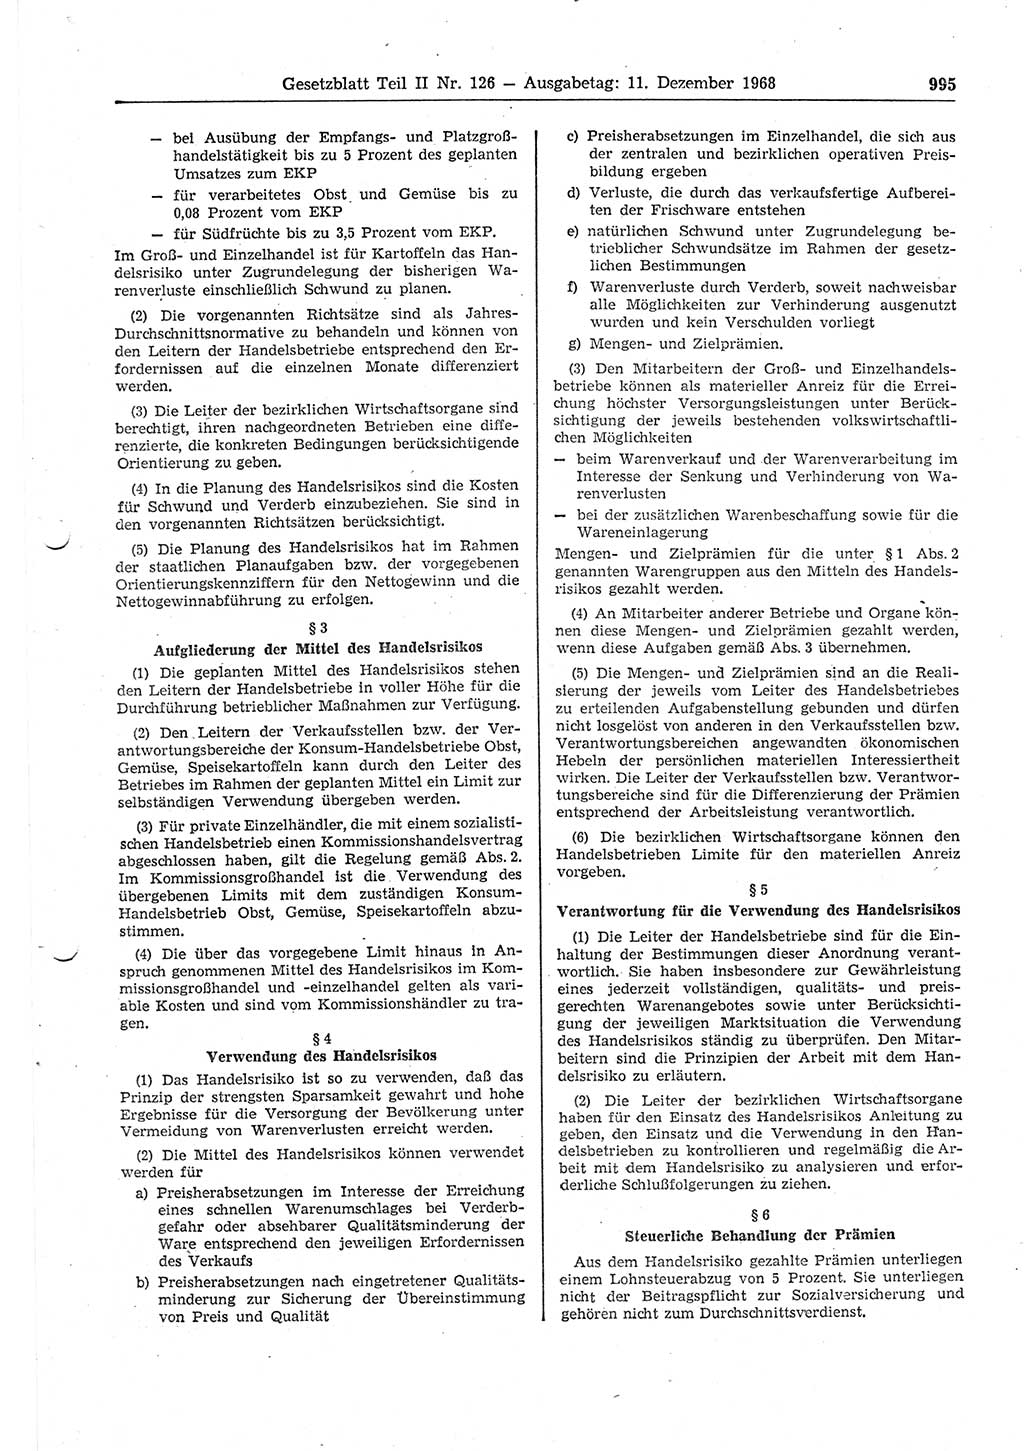 Gesetzblatt (GBl.) der Deutschen Demokratischen Republik (DDR) Teil ⅠⅠ 1968, Seite 995 (GBl. DDR ⅠⅠ 1968, S. 995)